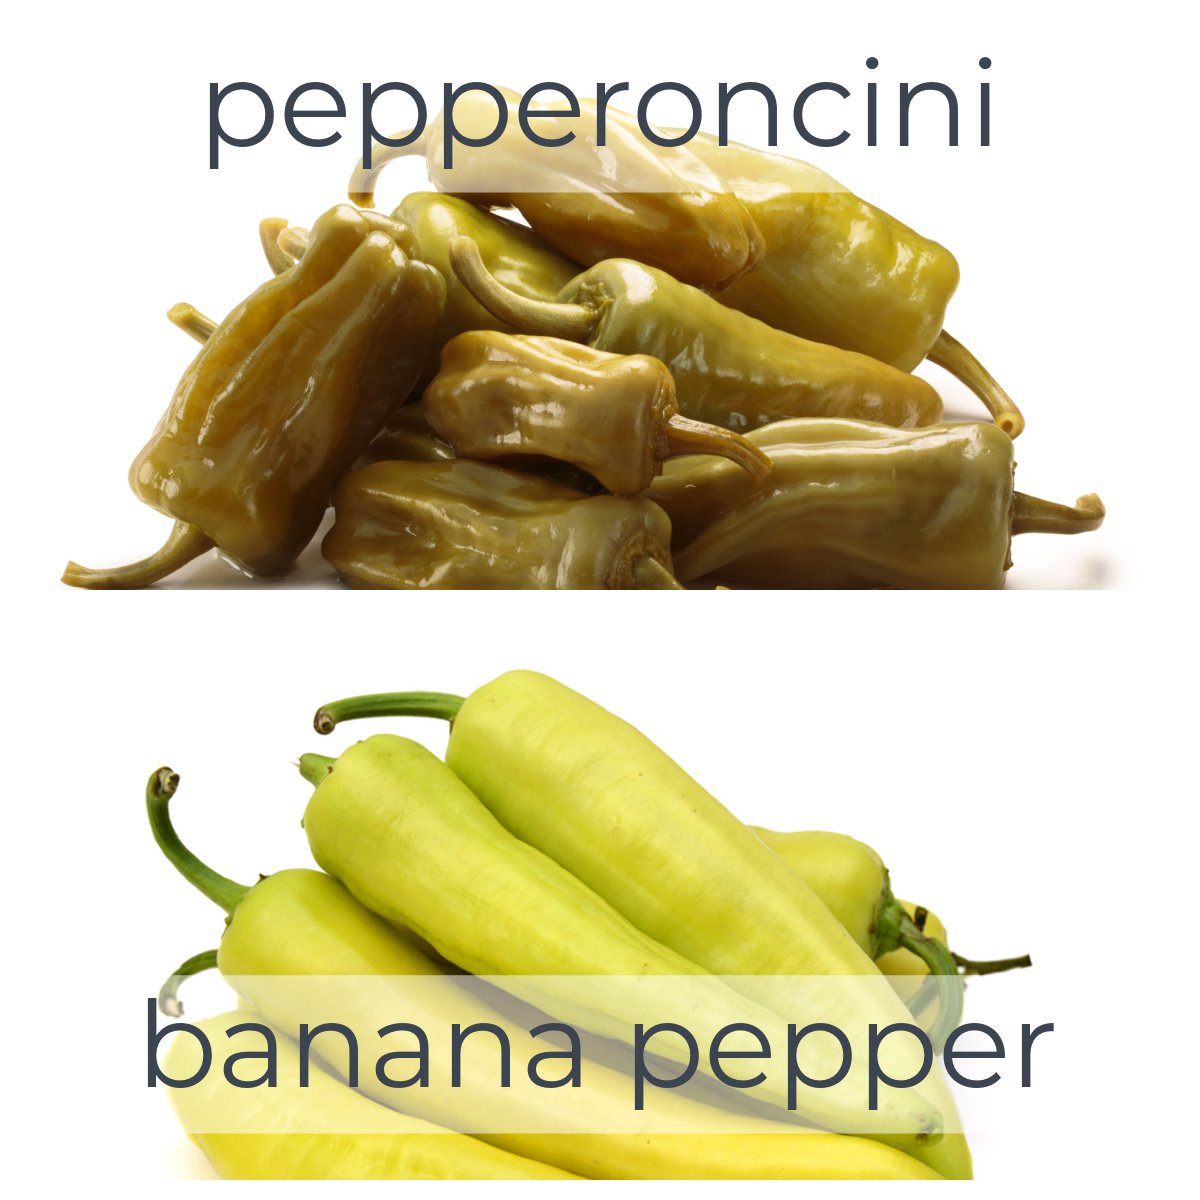 pepperoncini versus banana pepper